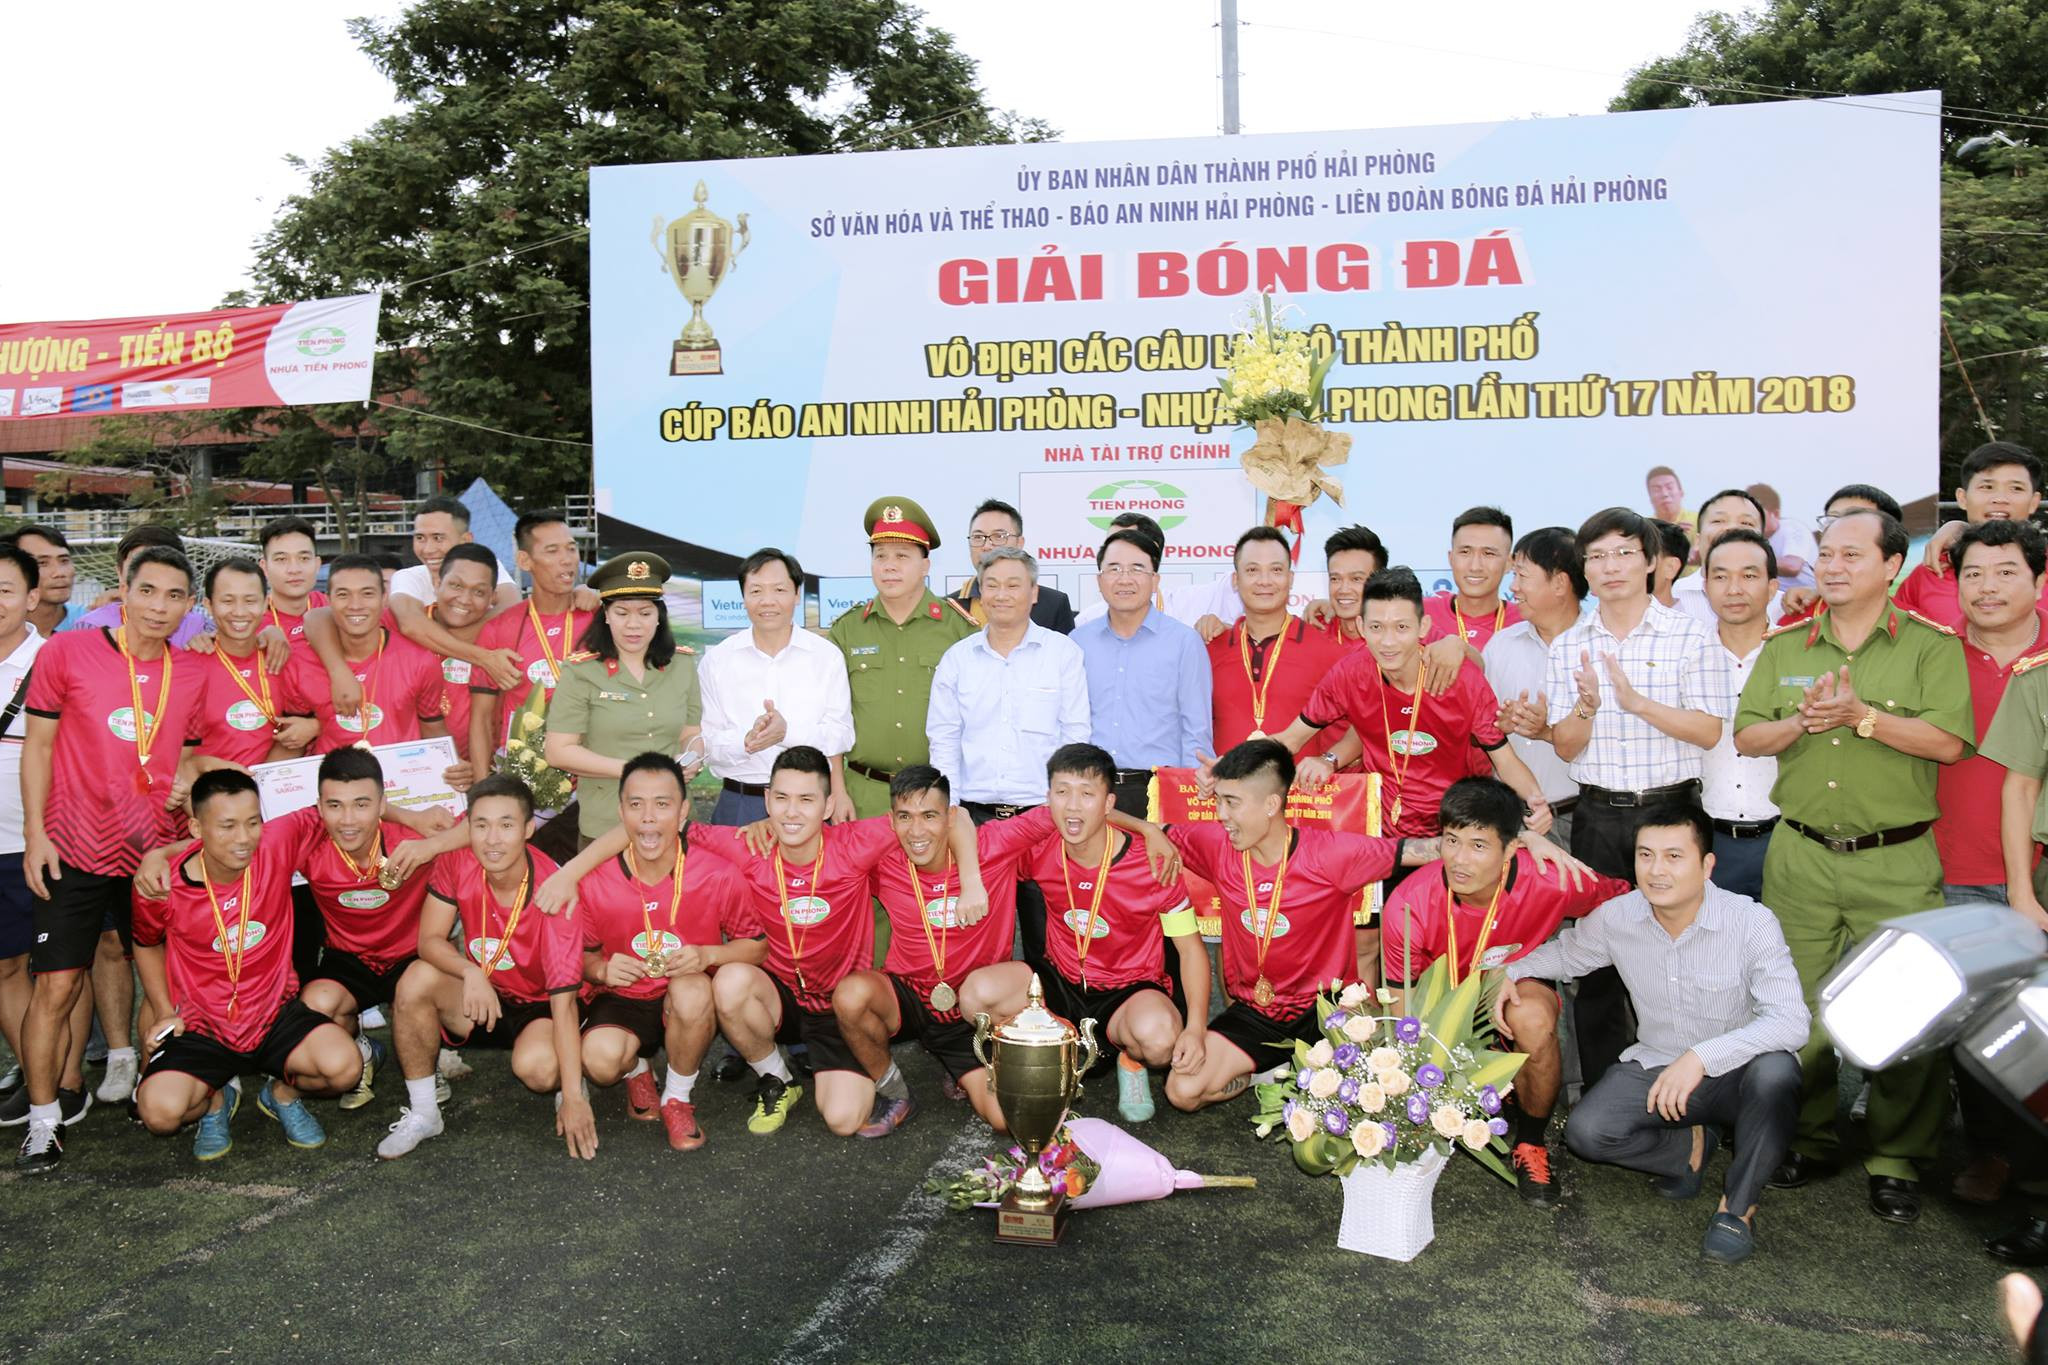 Lễ bế mạc Giải bóng đá Vô địch các CLB thành phố Cúp báo ANHP – Nhựa Tiền Phong lần thứ 17